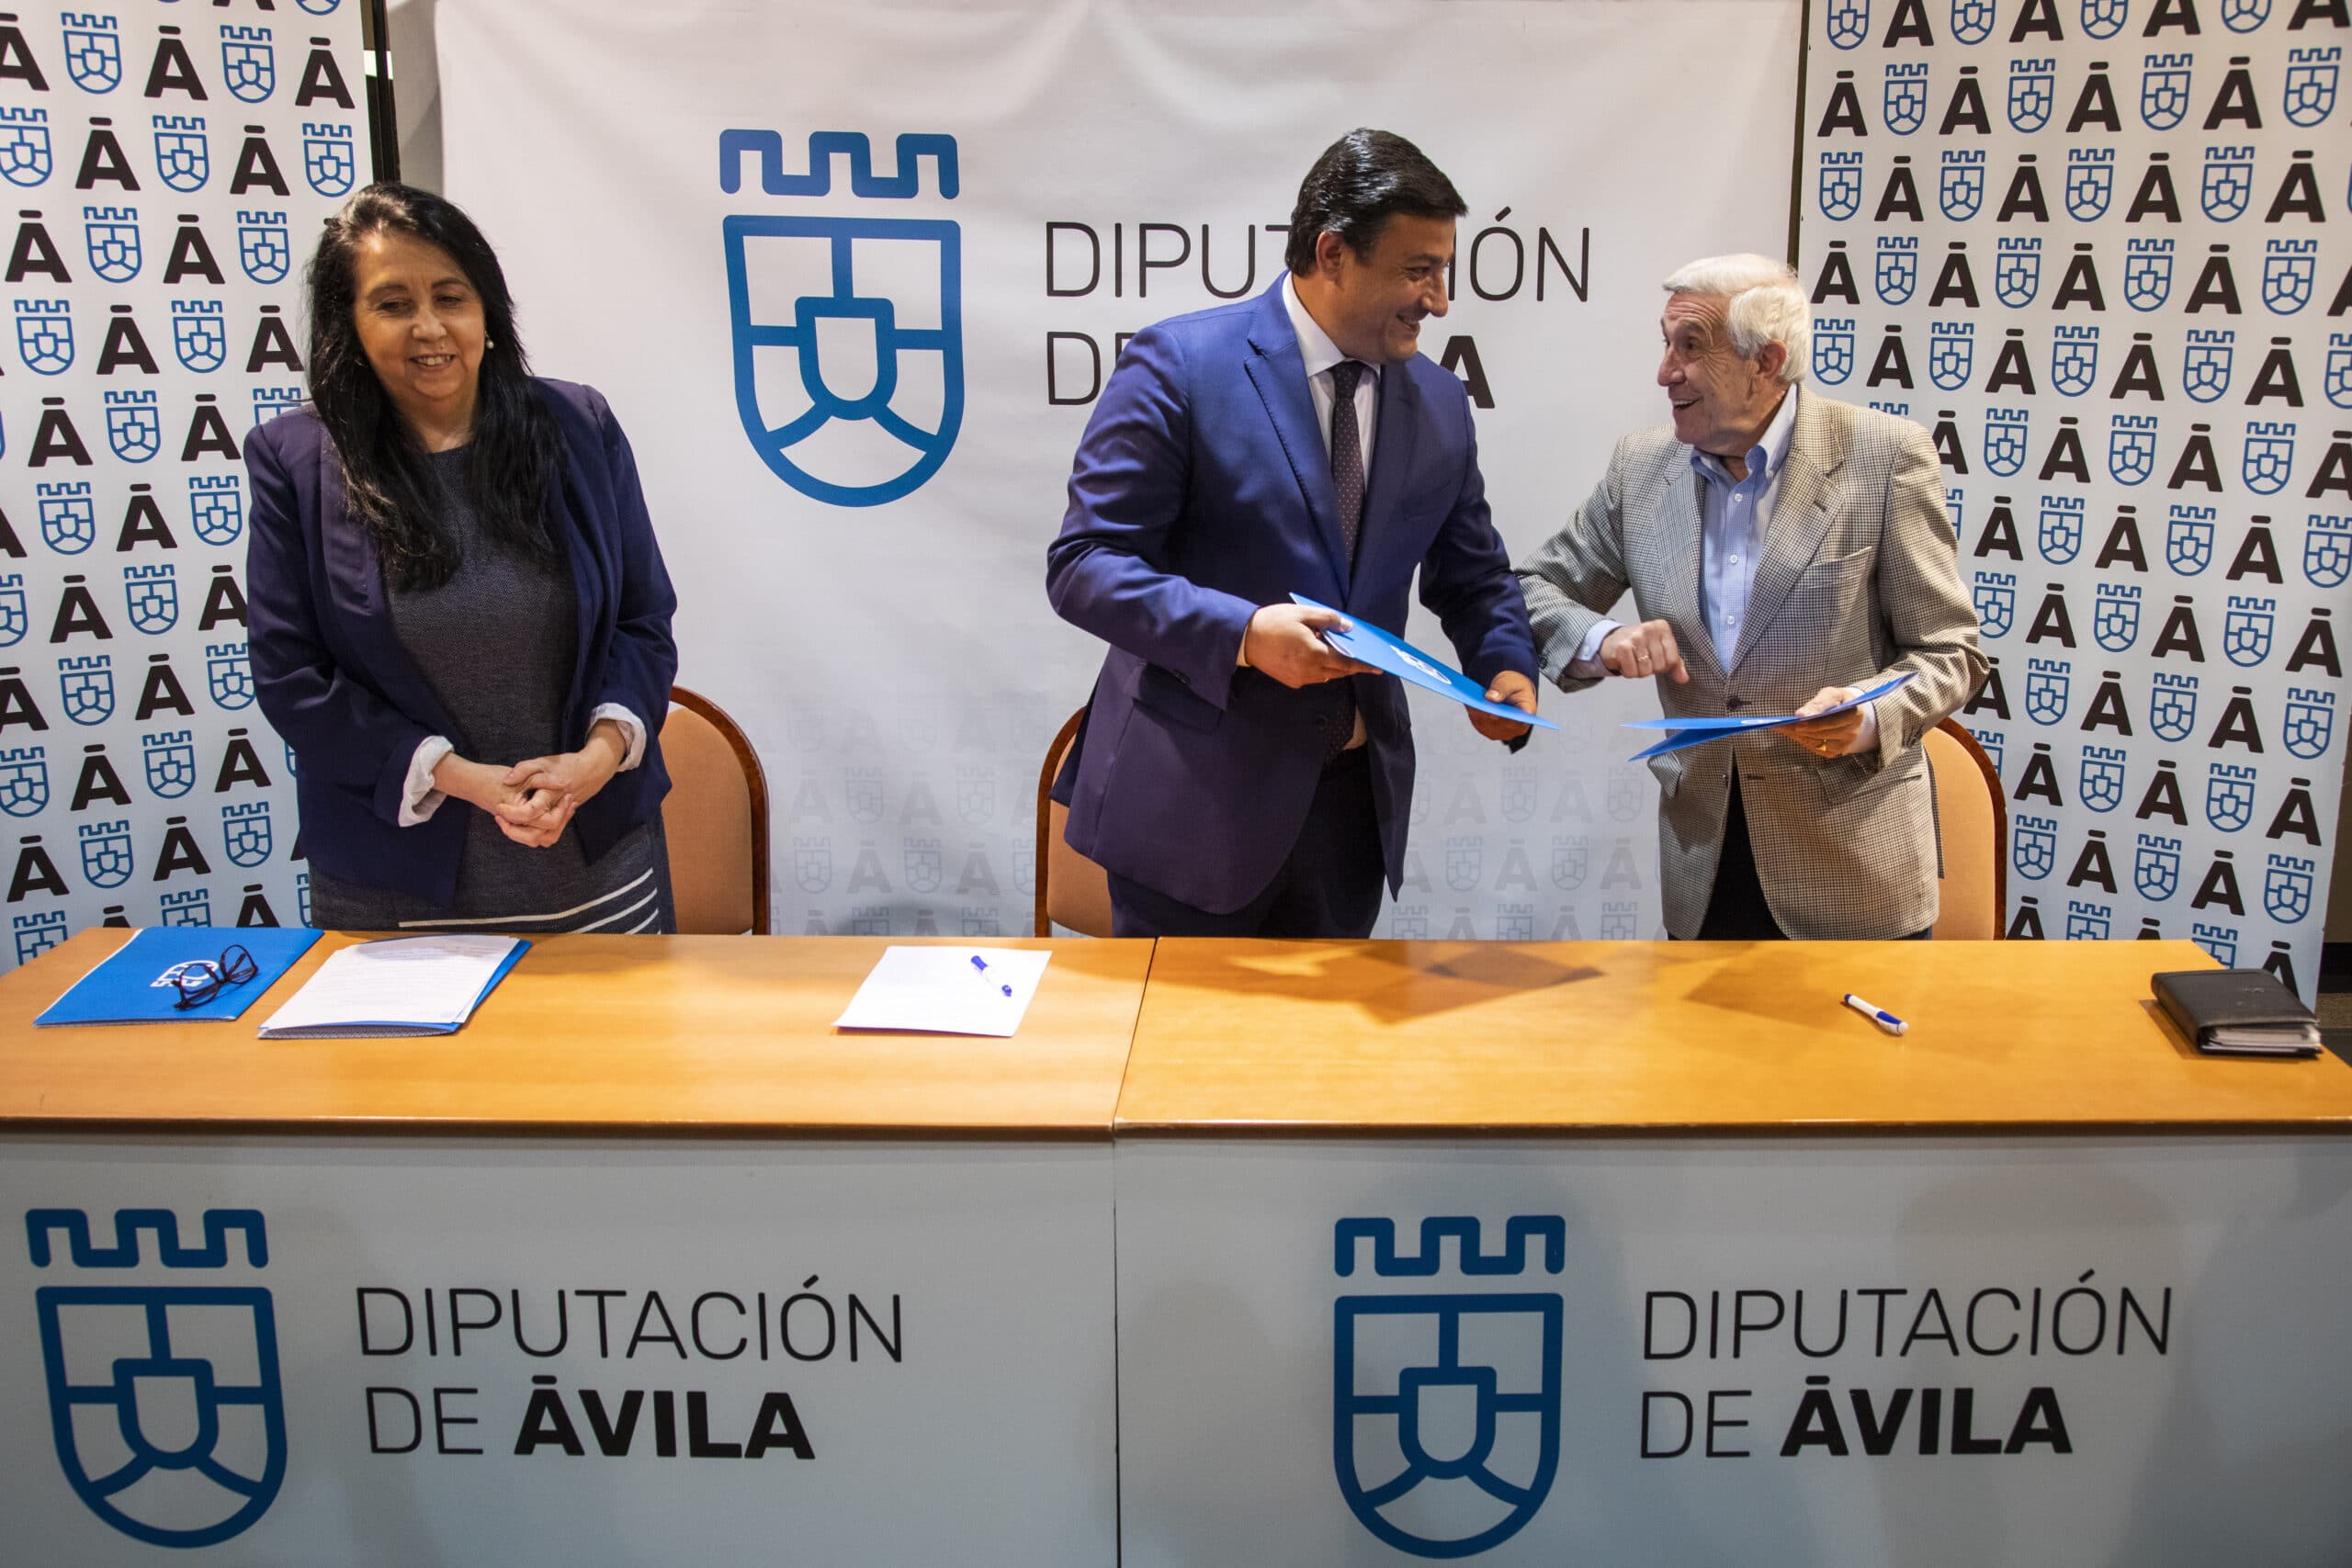 La Diputación de Ávila dona 15.000 euros al Banco de Alimentos